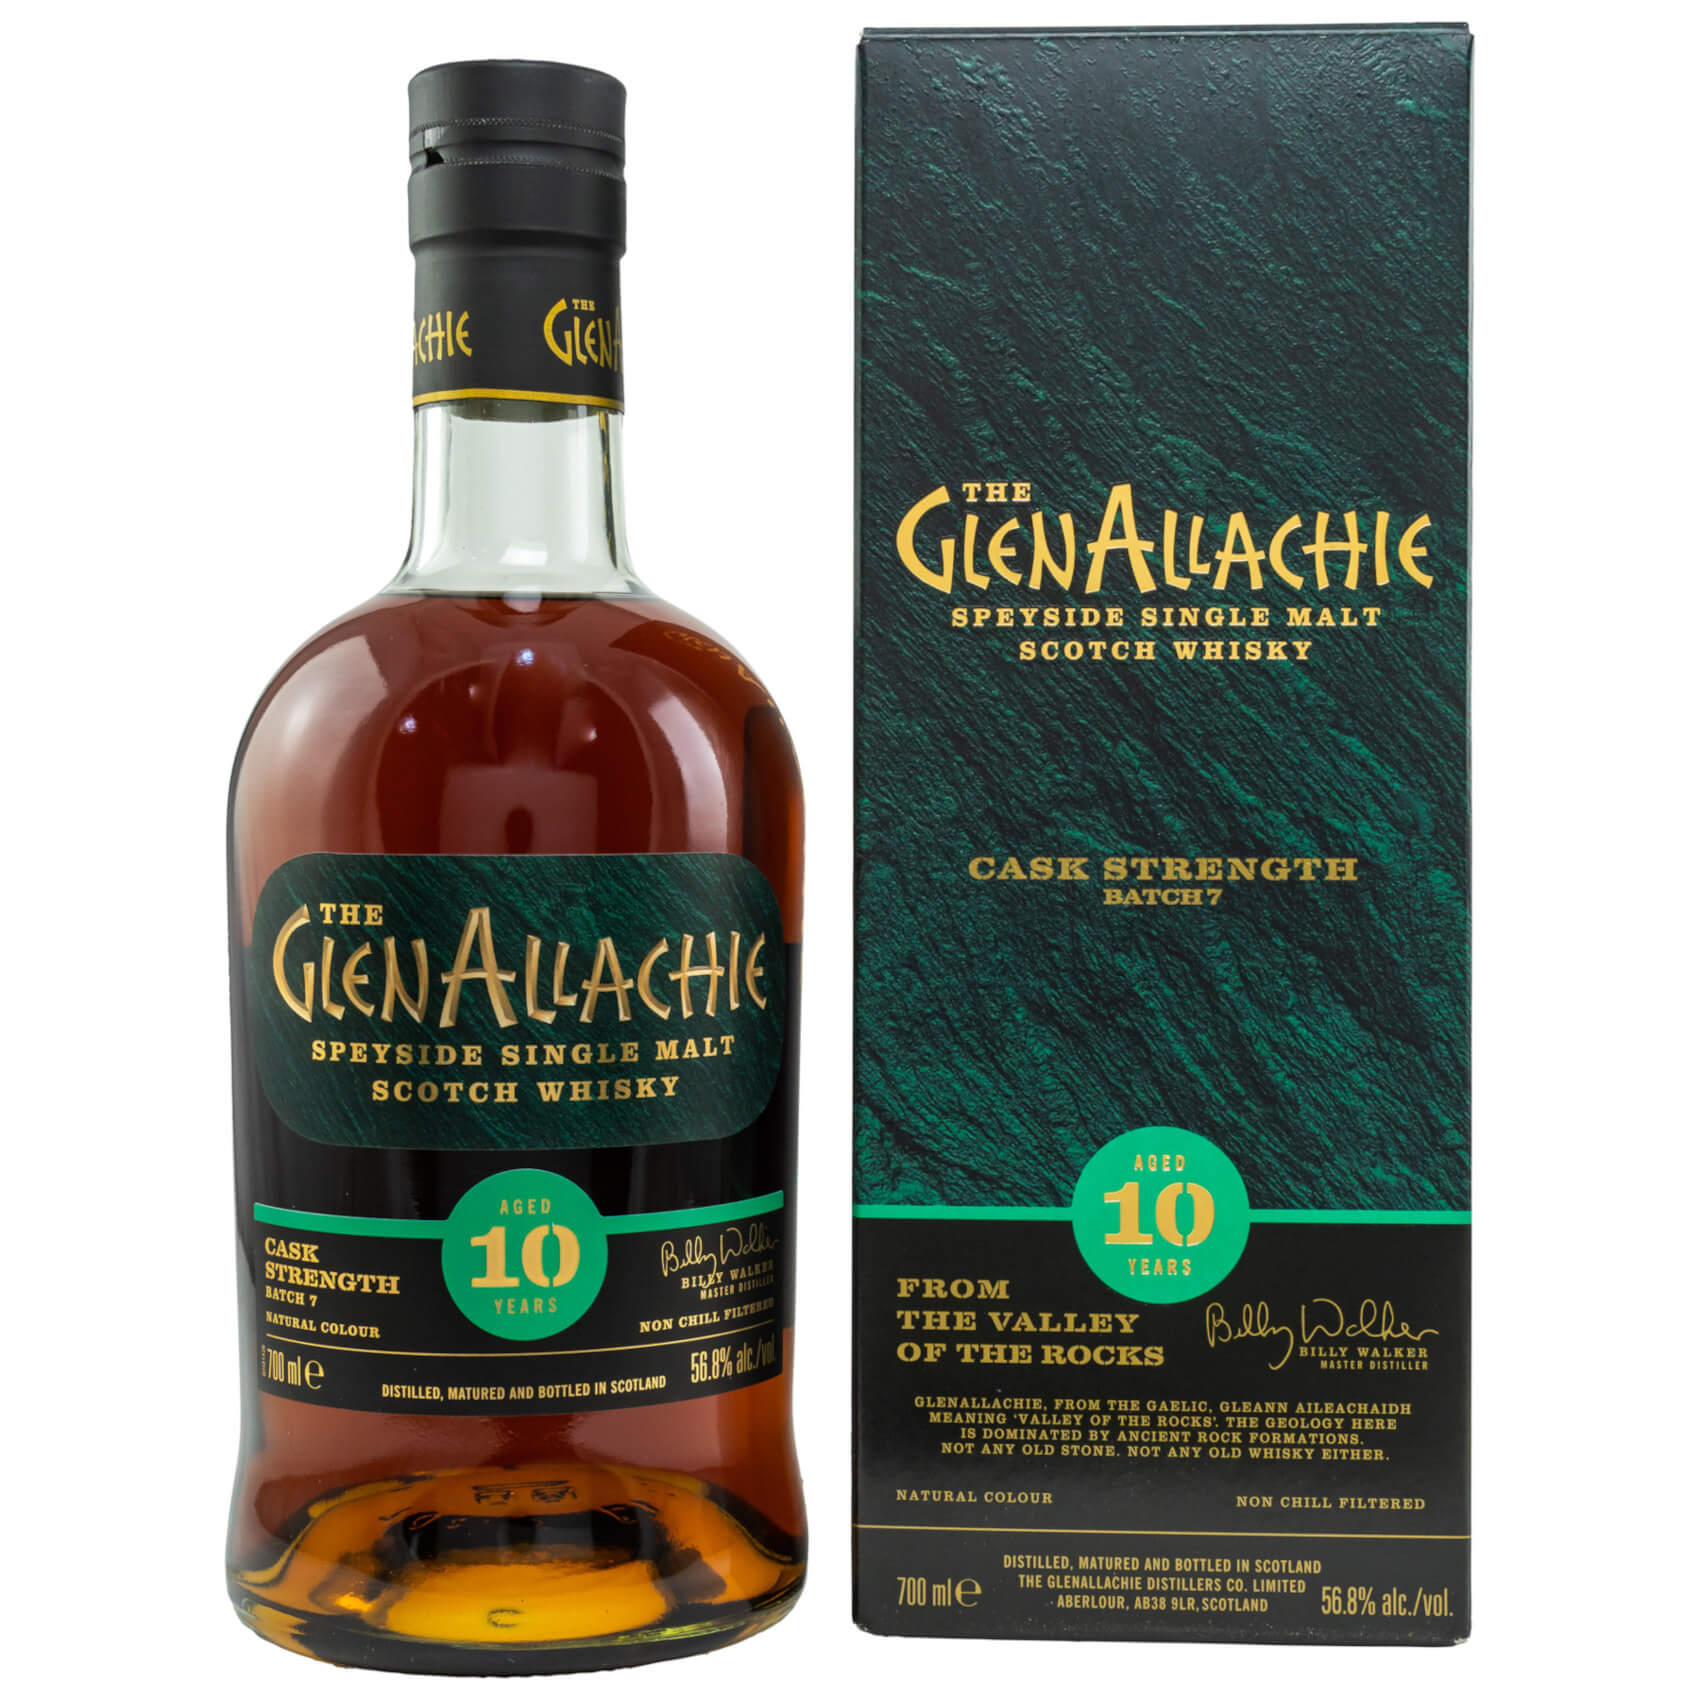 Flasche Glen Allachie 10 Cask Strength Whisky mit Verpackung